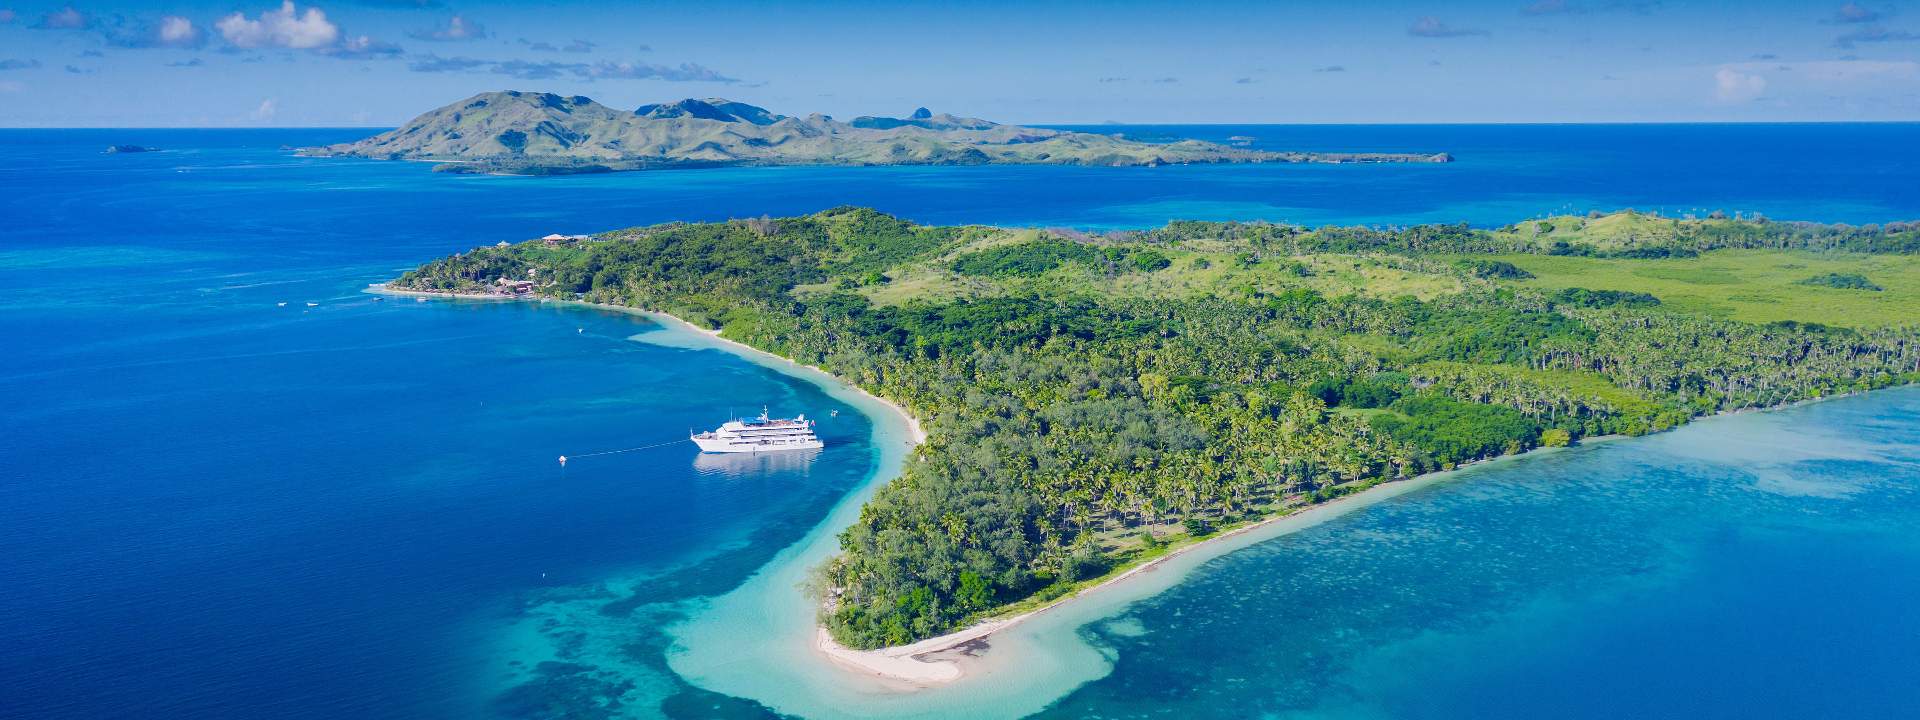 Escape to the mesmerizing archipelago of Fiji